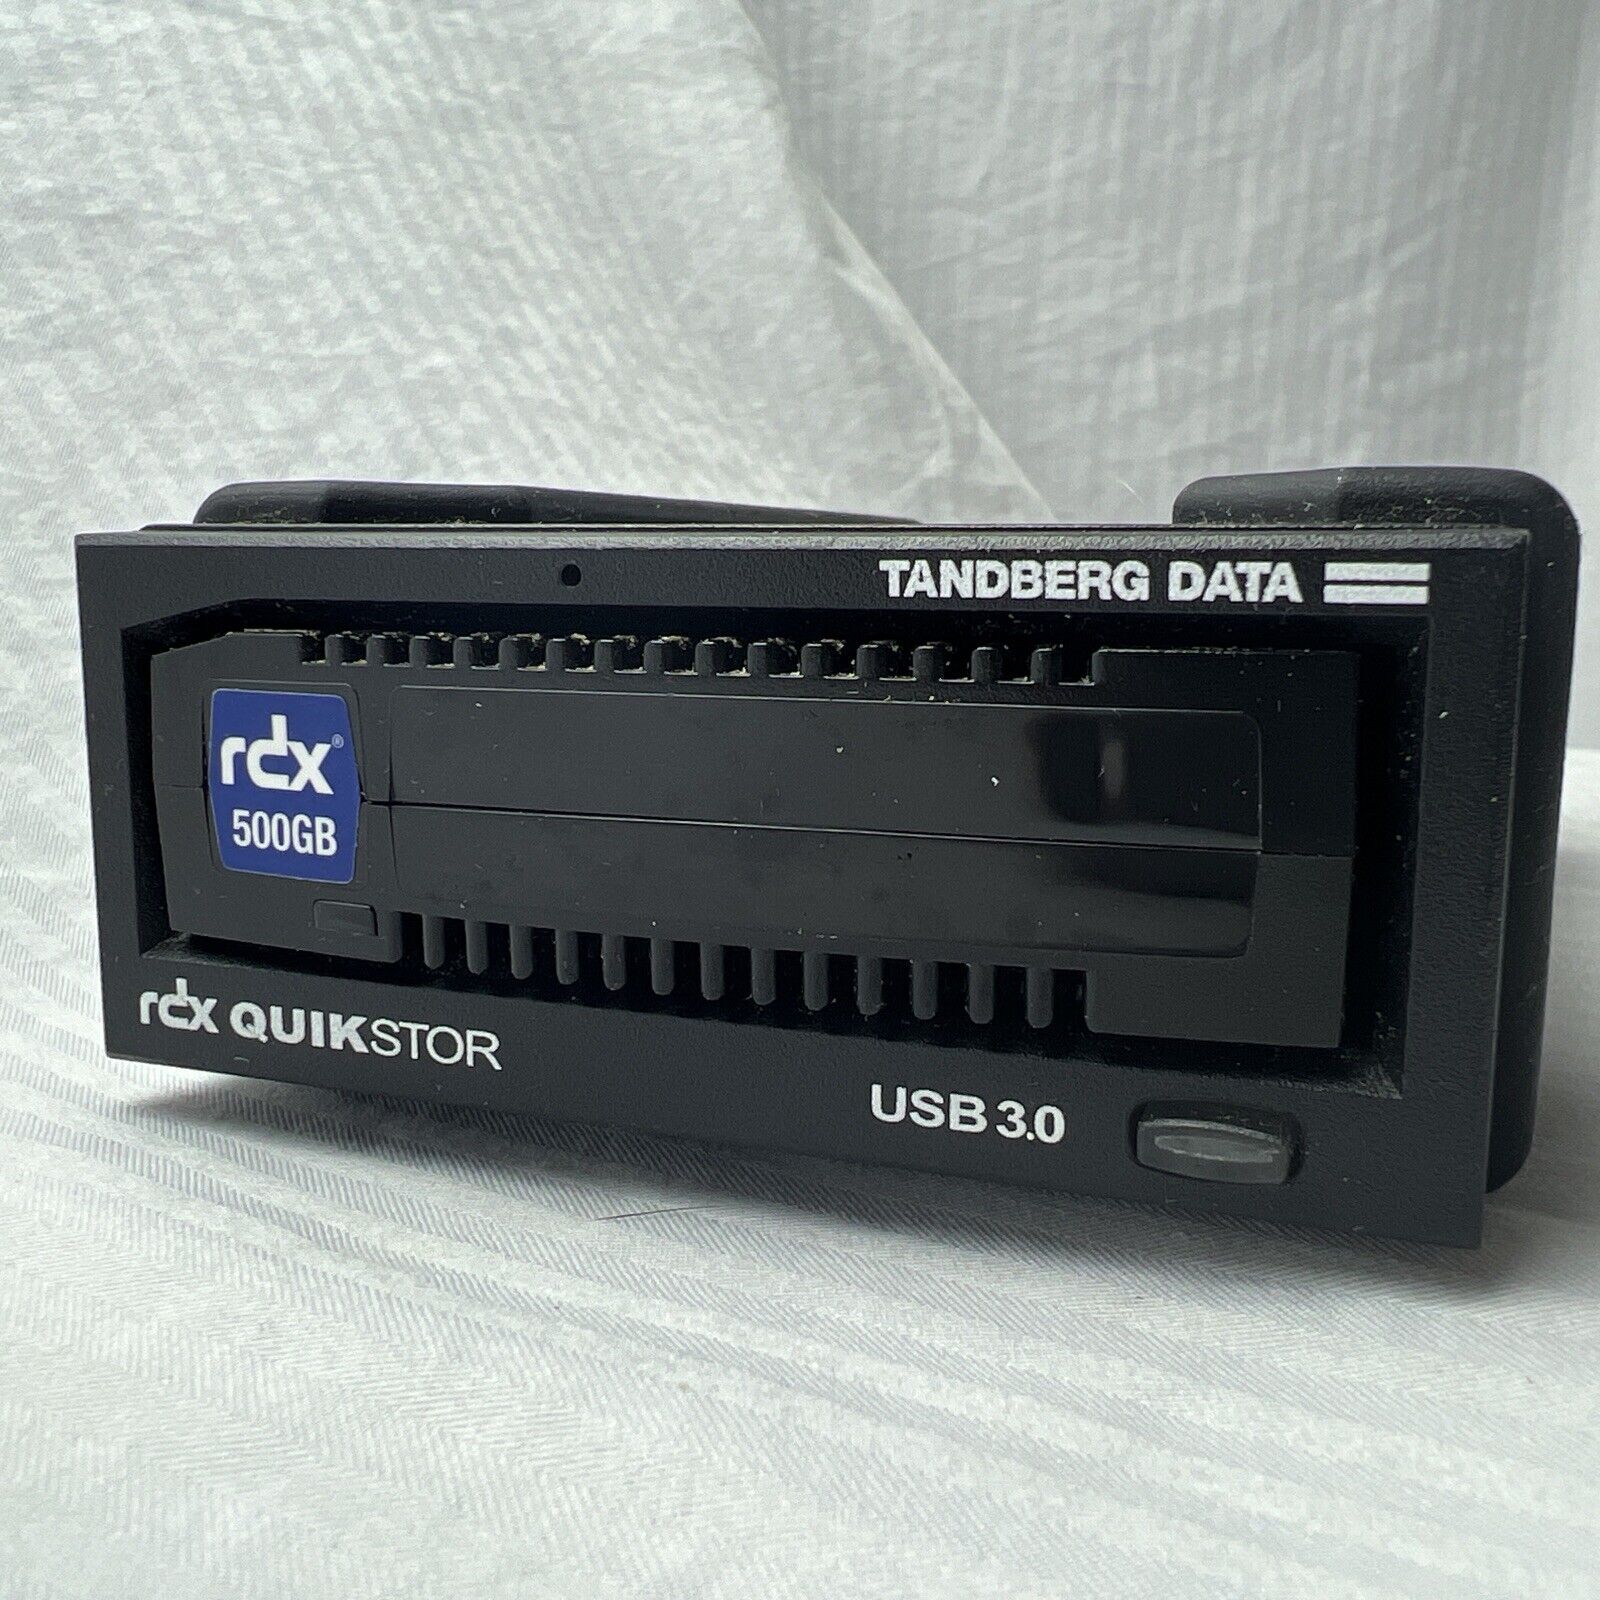 TANDBERG DATA RDX QUIKSTOR EXTERNAL USB3 TAPE DRIVE W/500GB TAPE Untested